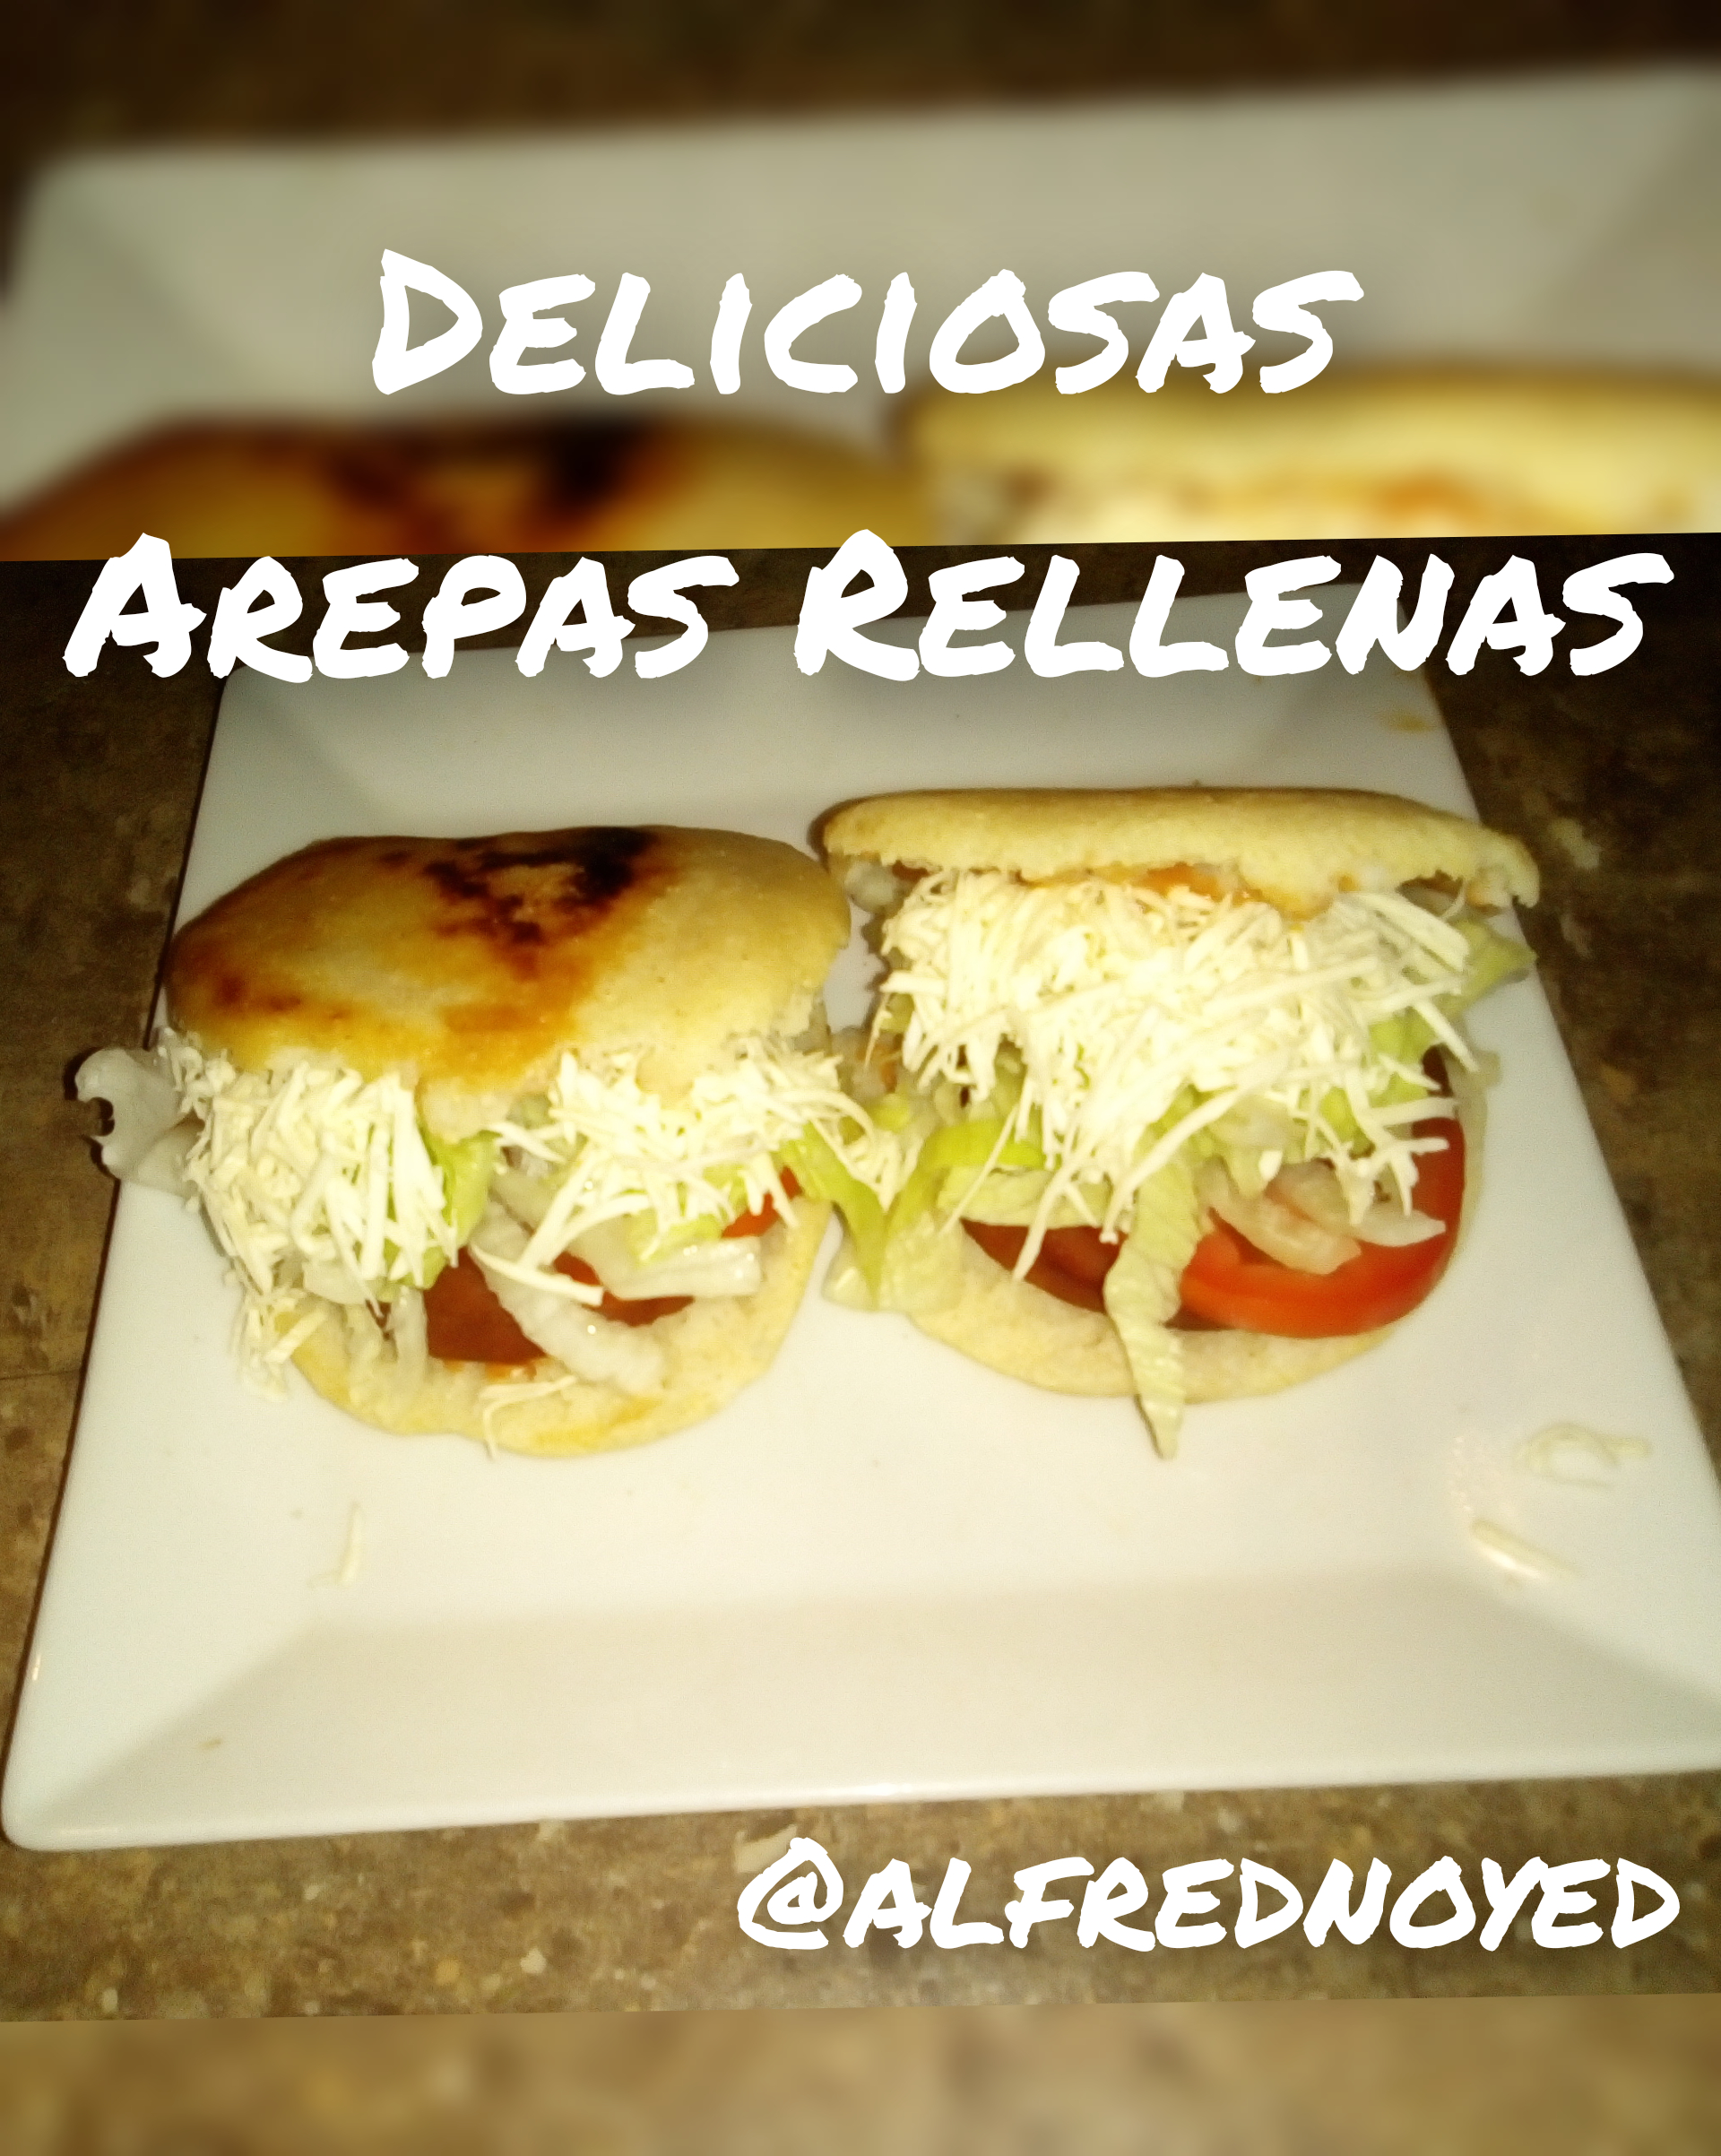 Arepa Rellena // Stuffed Arepa (Receta completa en mi Instagram